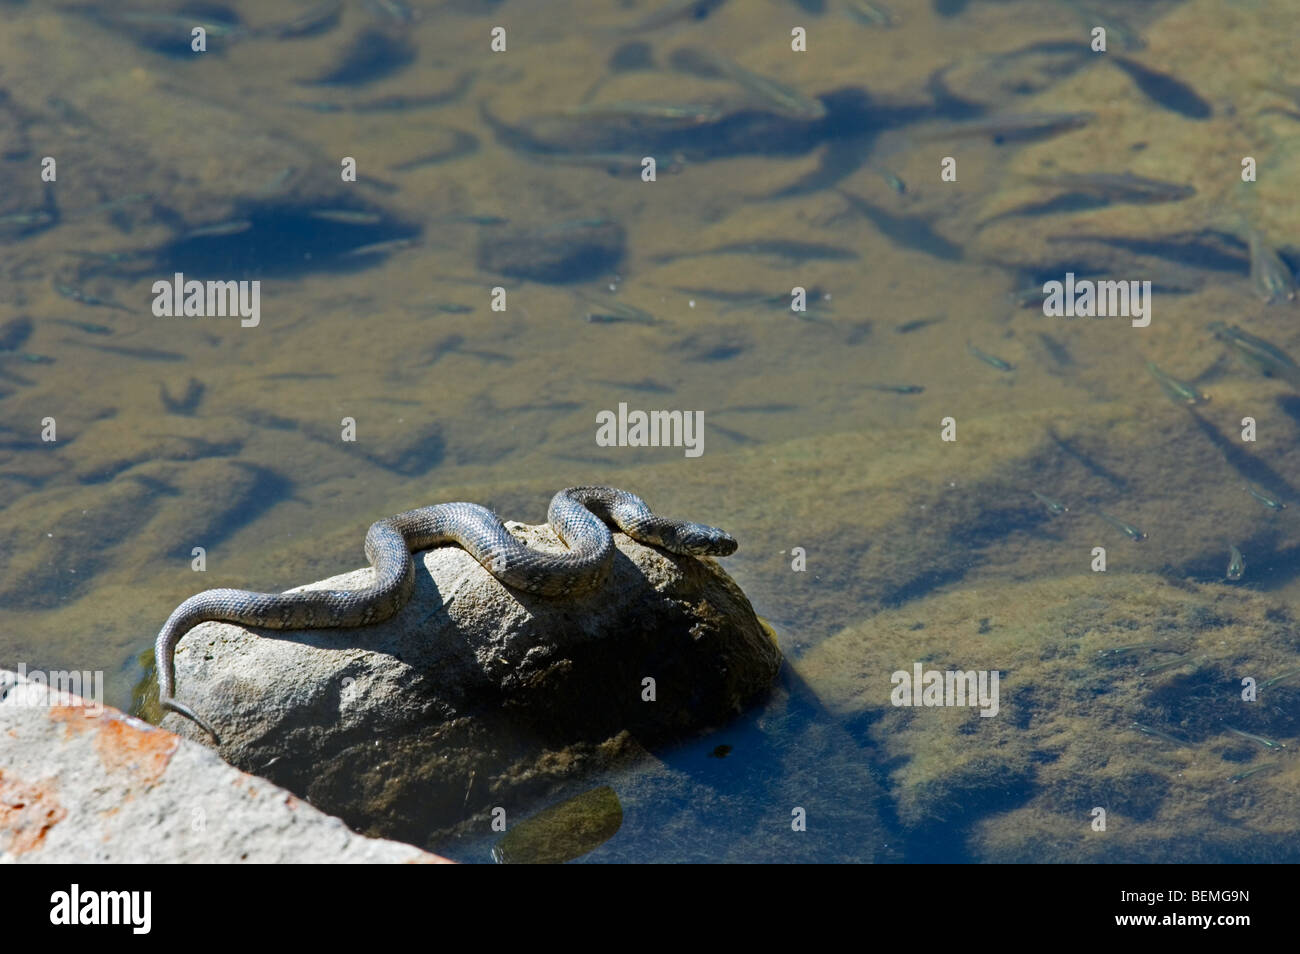 L'eau chasse viperine Snake (Natrix maura) en embuscade sur la roche à bord de la rivière à la recherche de poissons, de l'Estrémadure, Espagne Banque D'Images